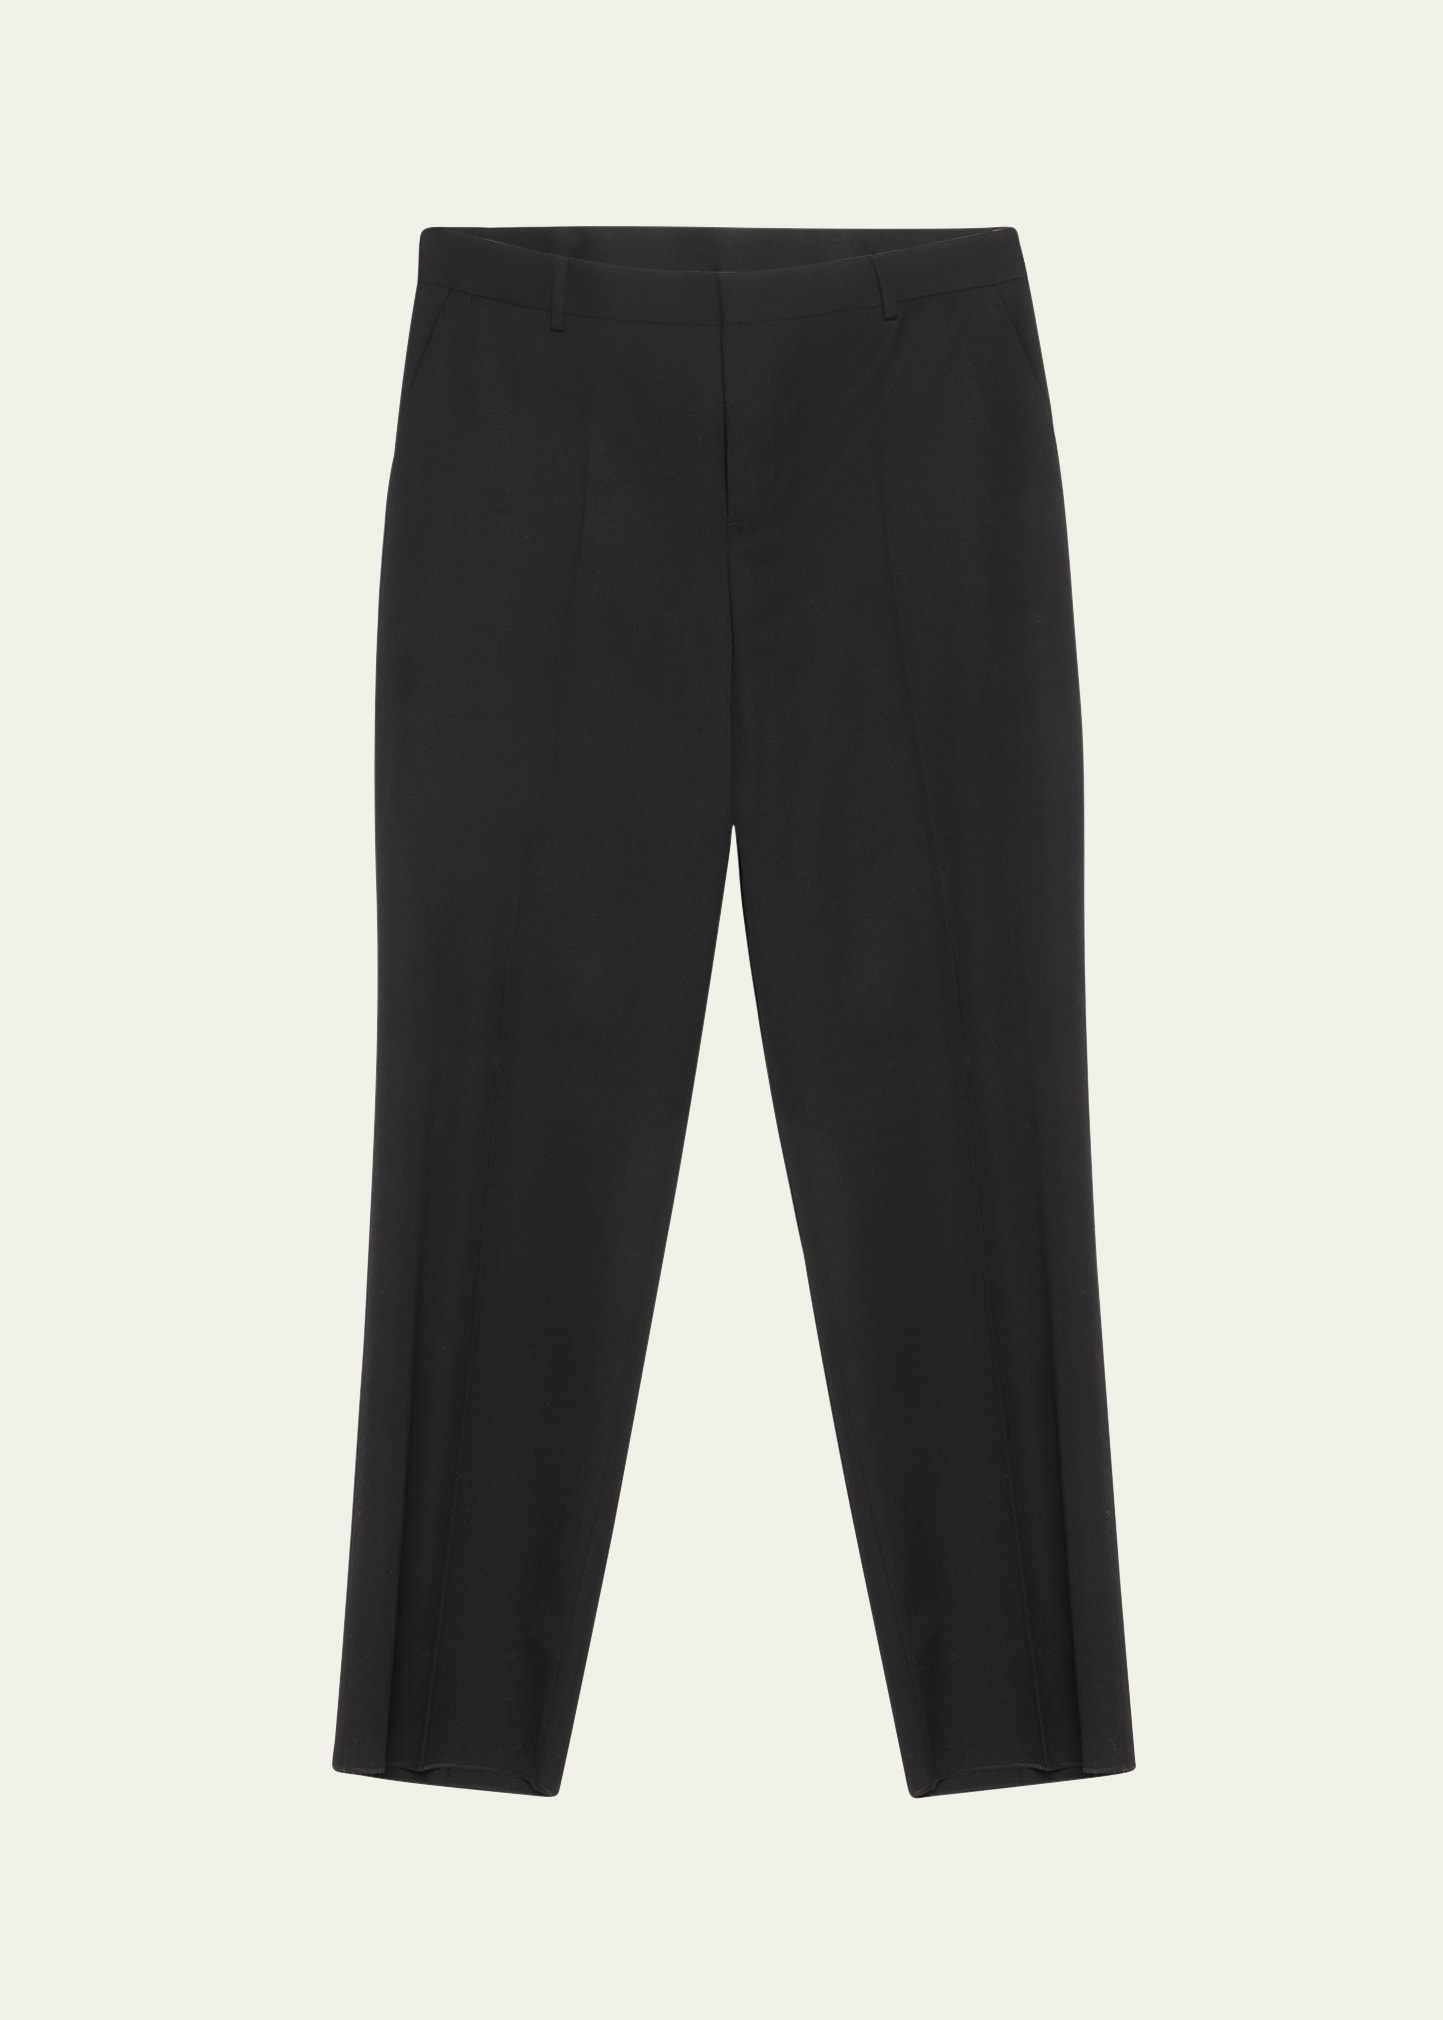 Versace Men's Wool Twill Formal Trousers In Black